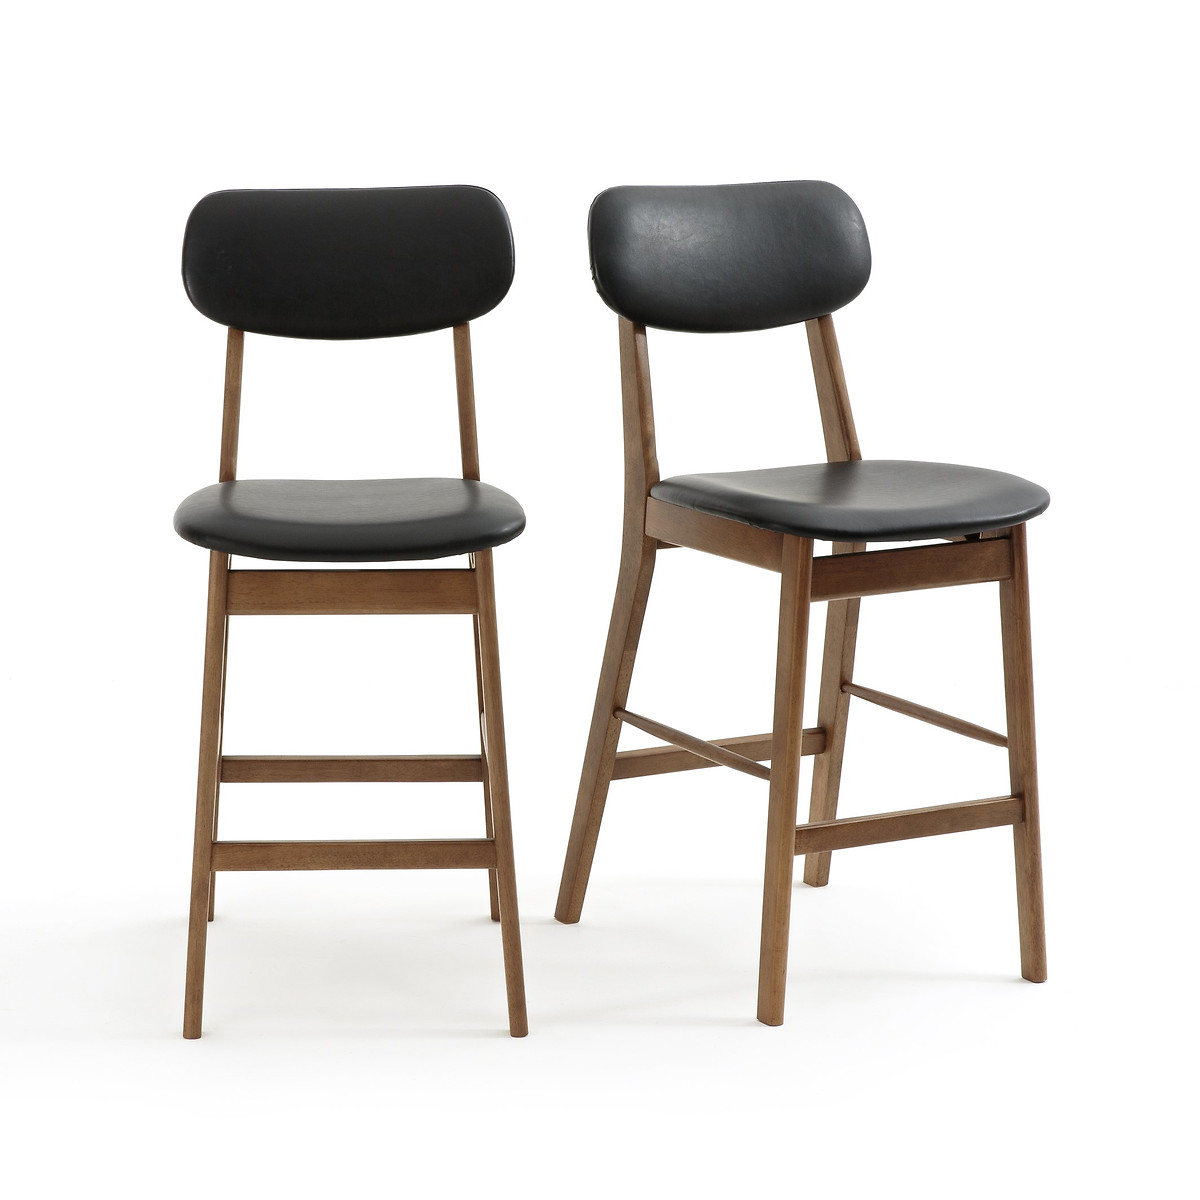 Комплект из 2 барных стульев средней высоты Watford единый размер каштановый комплект из 2 барных стульев средней высоты watford единый размер каштановый